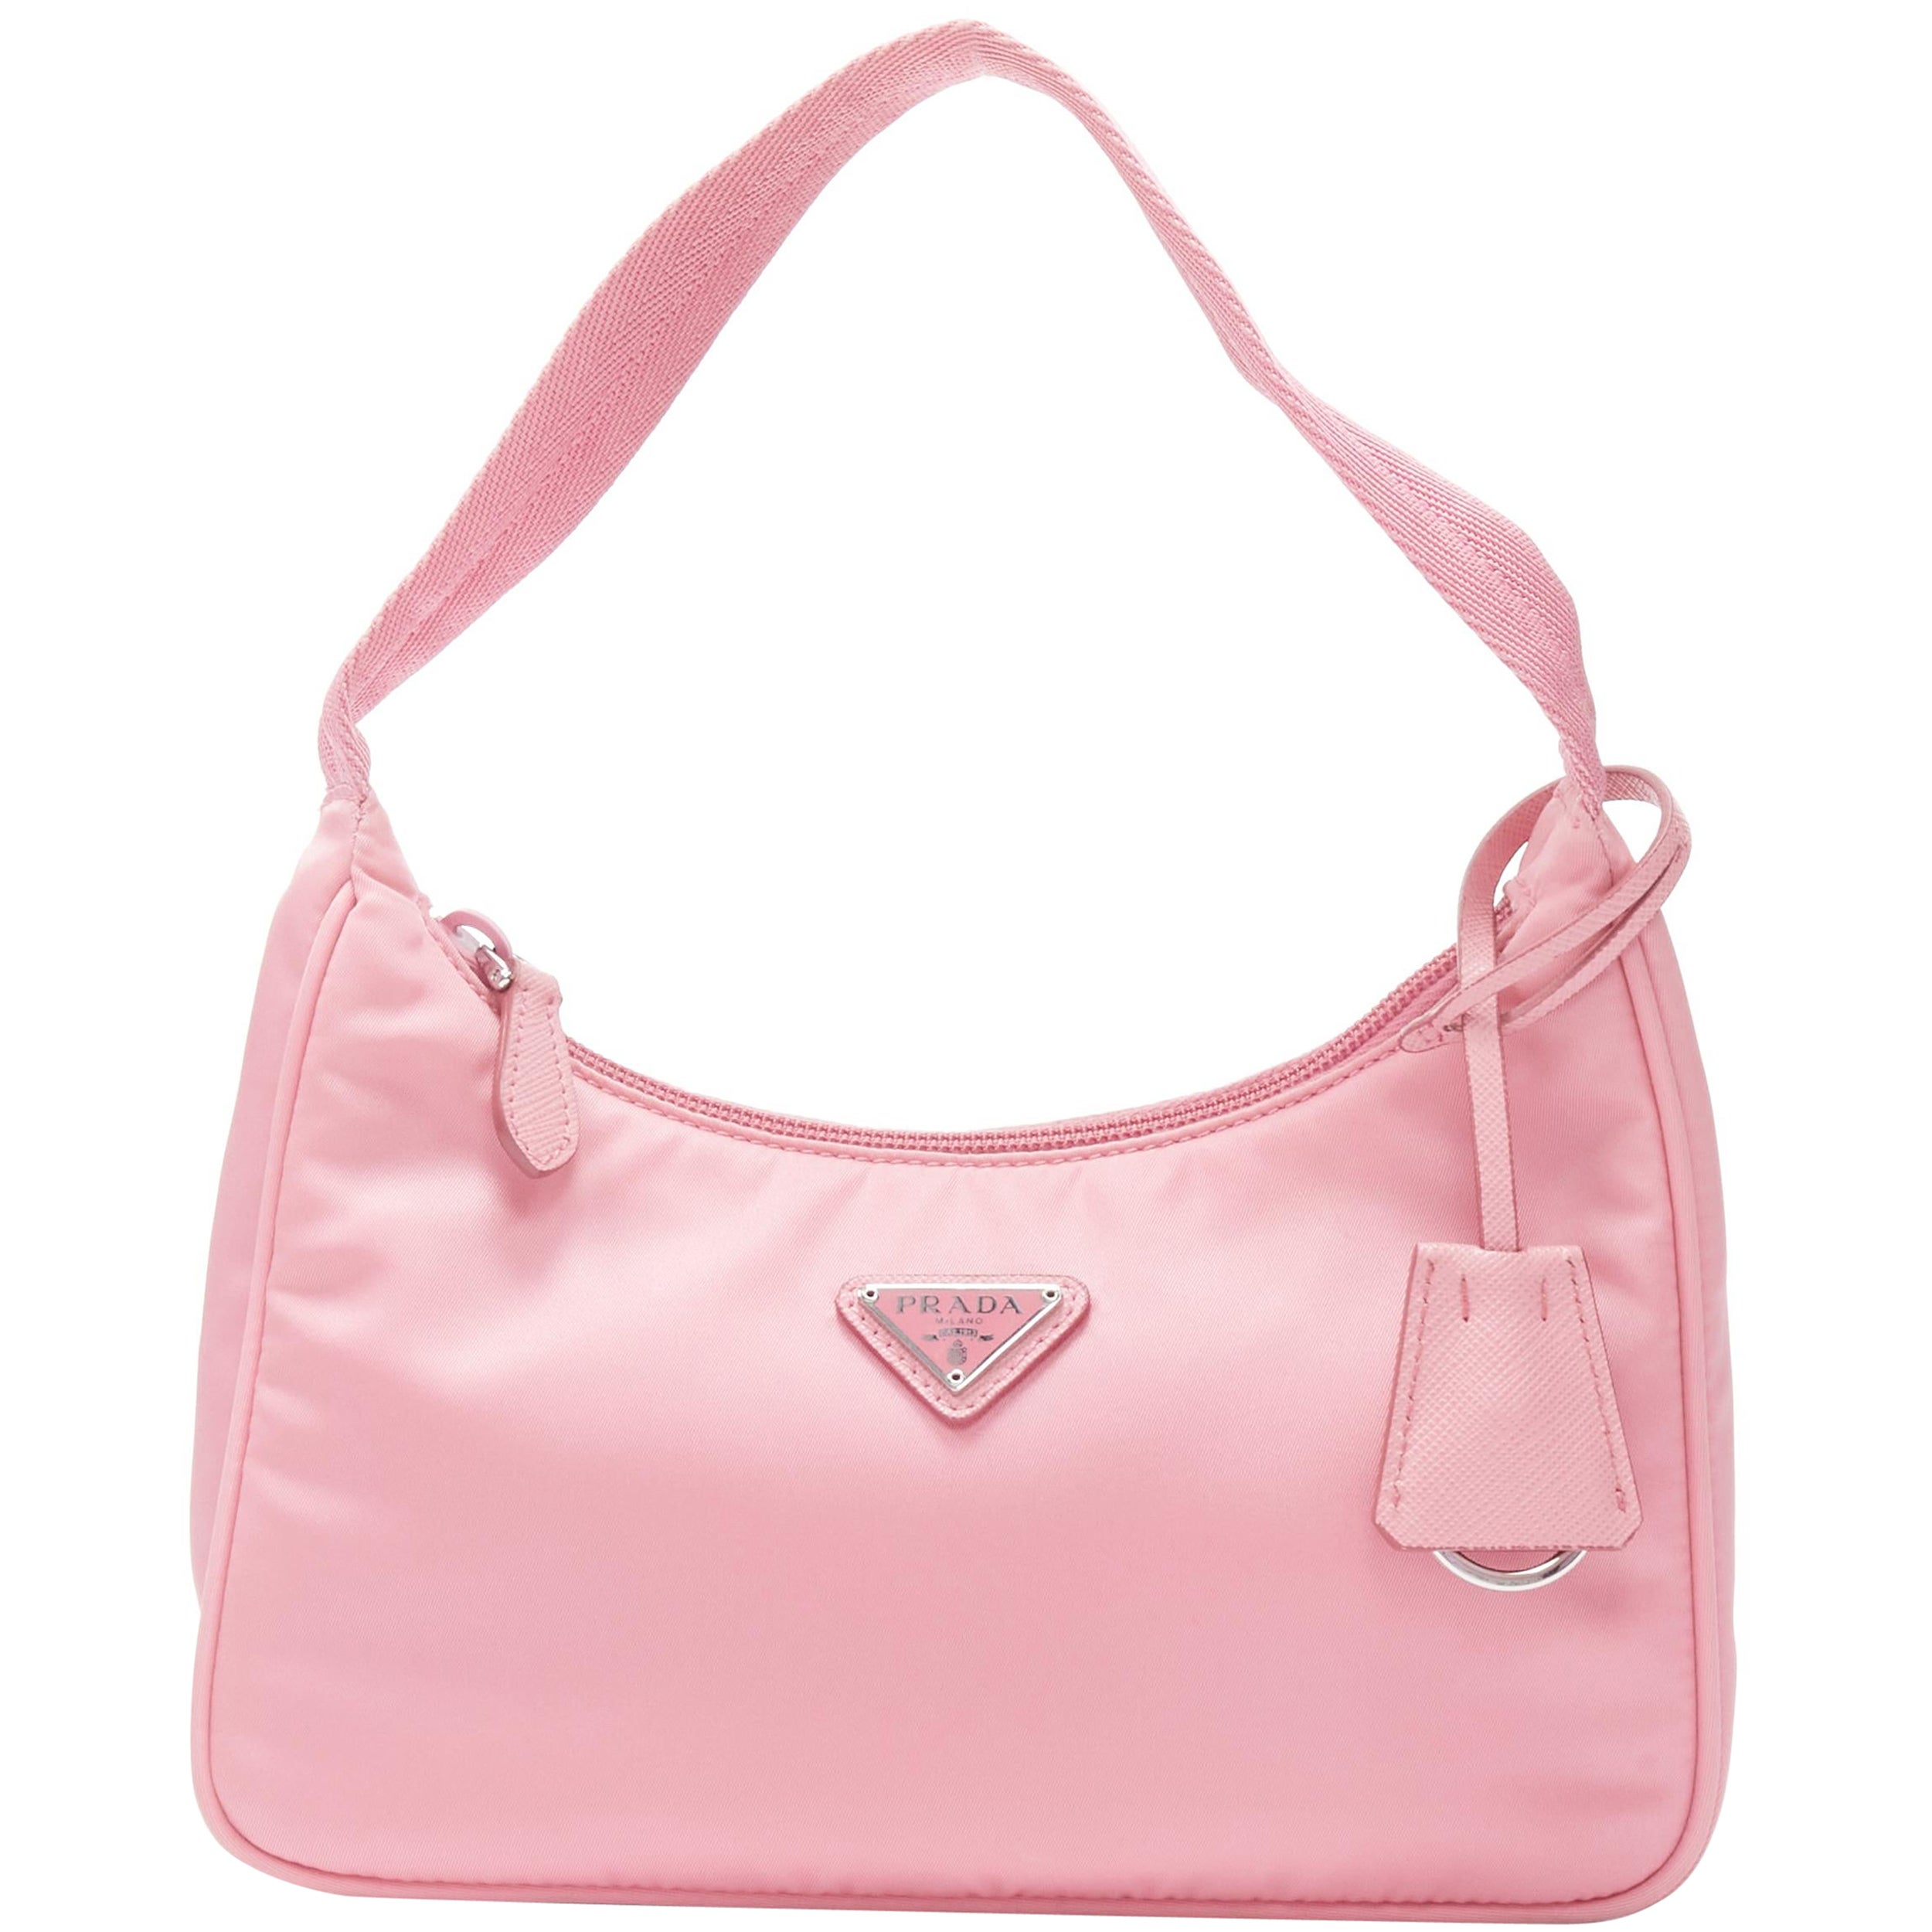 PRADA Re Edition 200 pink Tessuto Nylon saffiano trim underarm bag